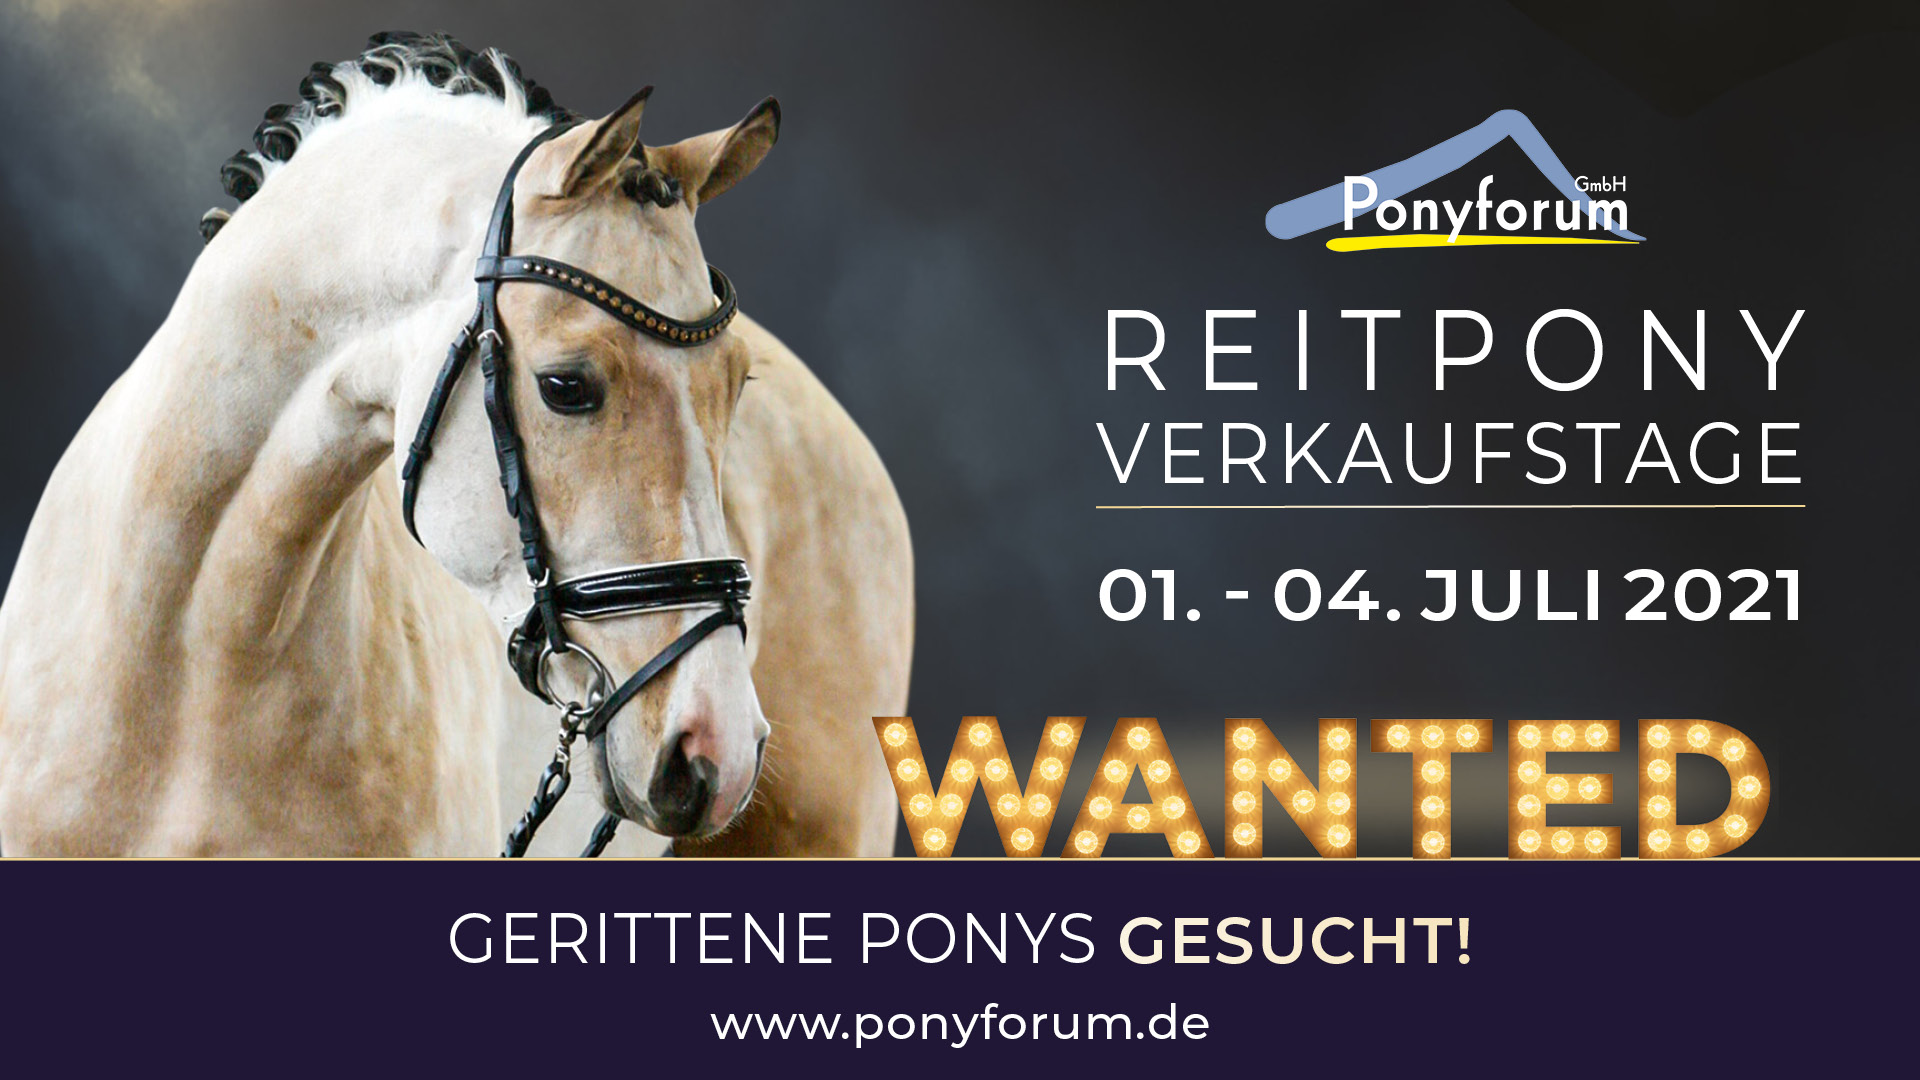 Ponyforum GmbH: Verkaufsponys gesucht!